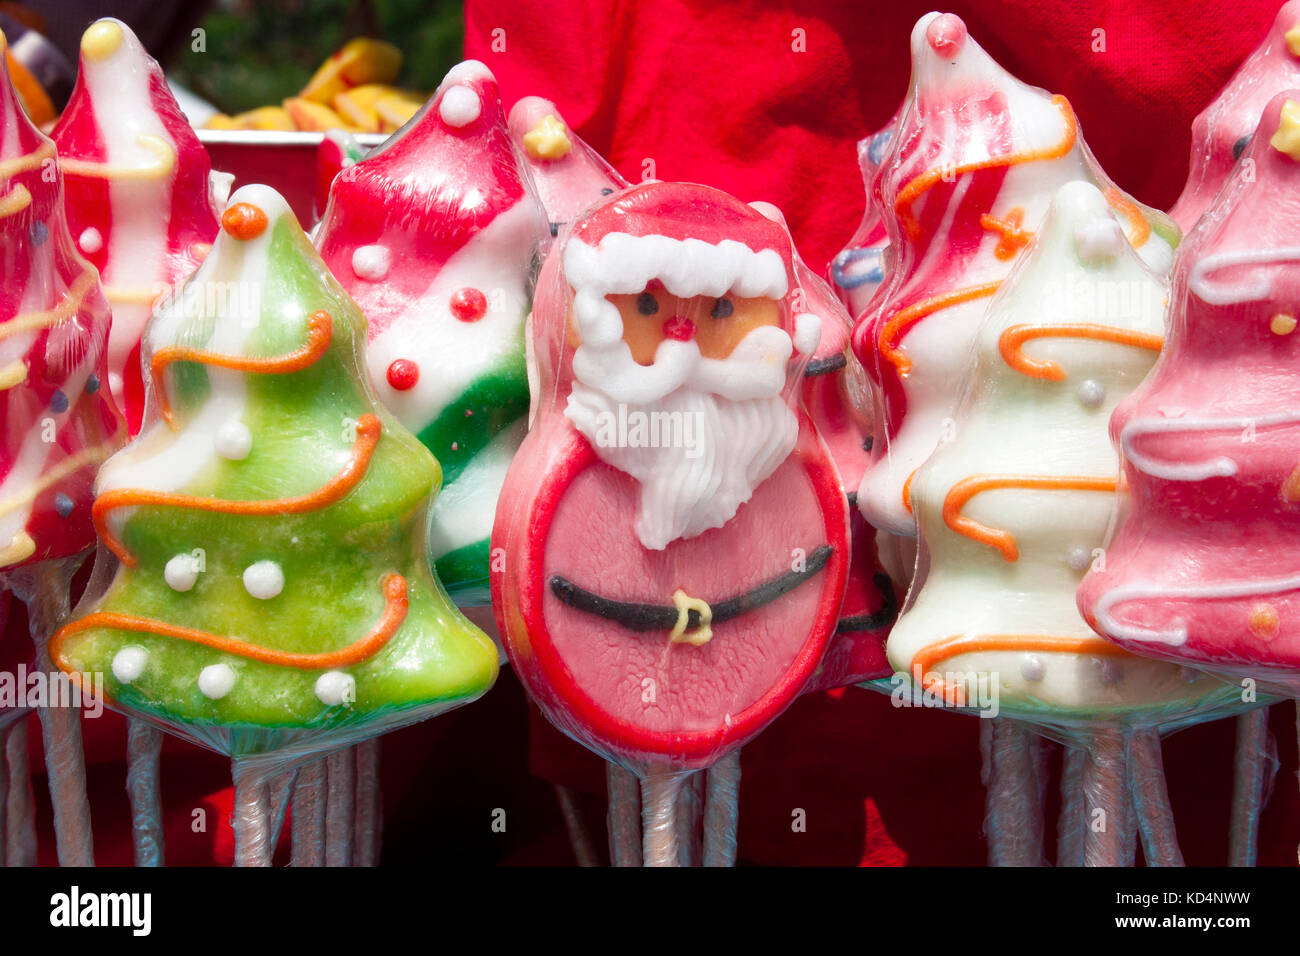 Arbre de Noël coloré et santa claus lolly pop enveloppé dans du cellophane dans fête foraine pour la vente, détail Banque D'Images